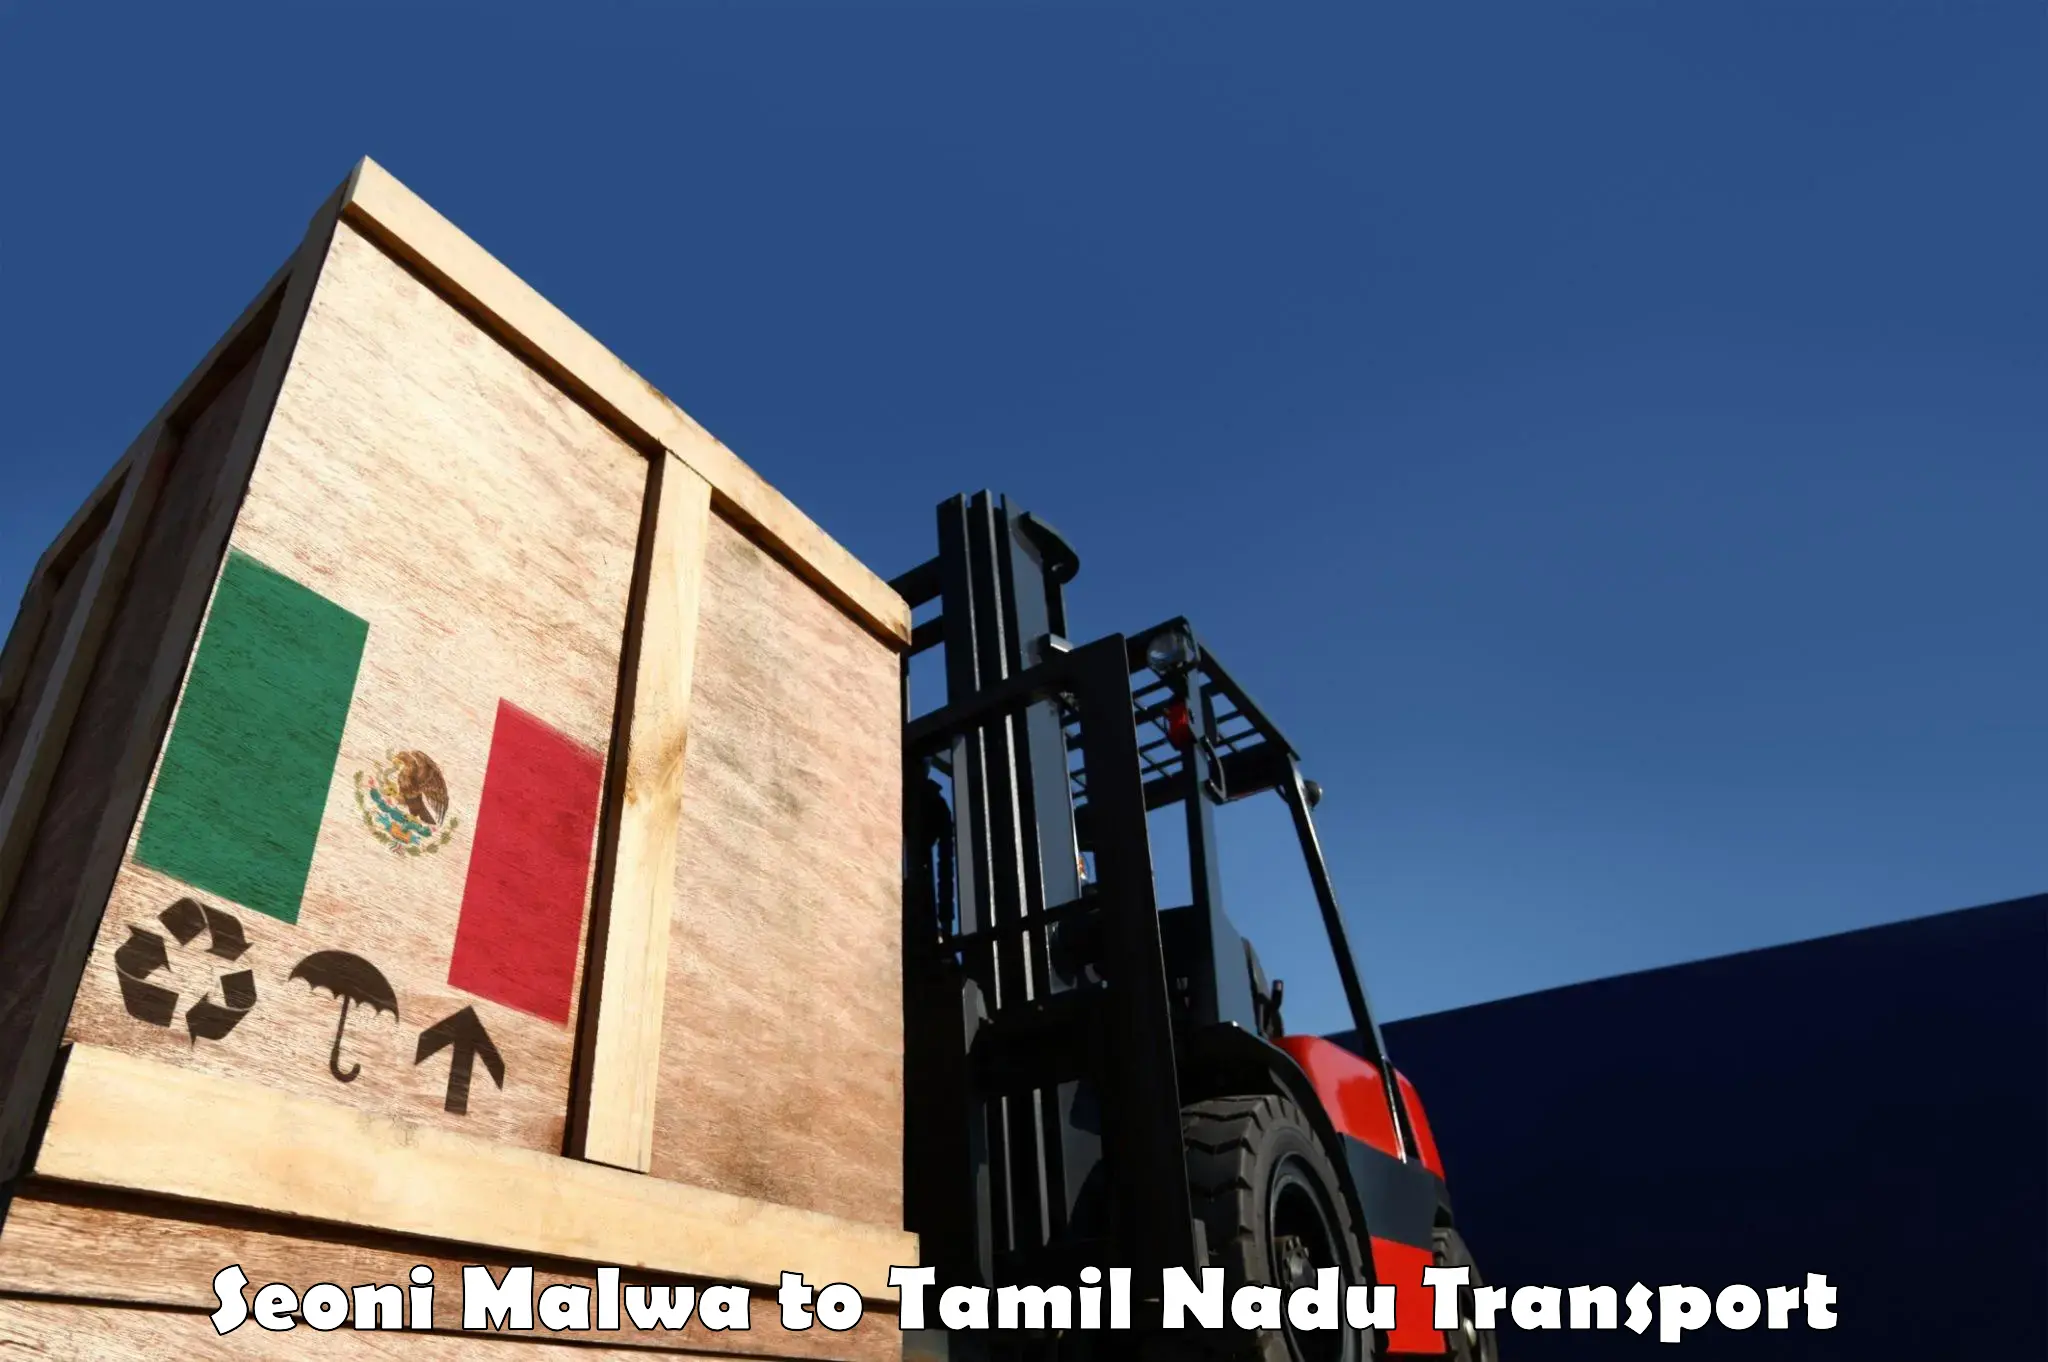 Daily transport service Seoni Malwa to Omalur